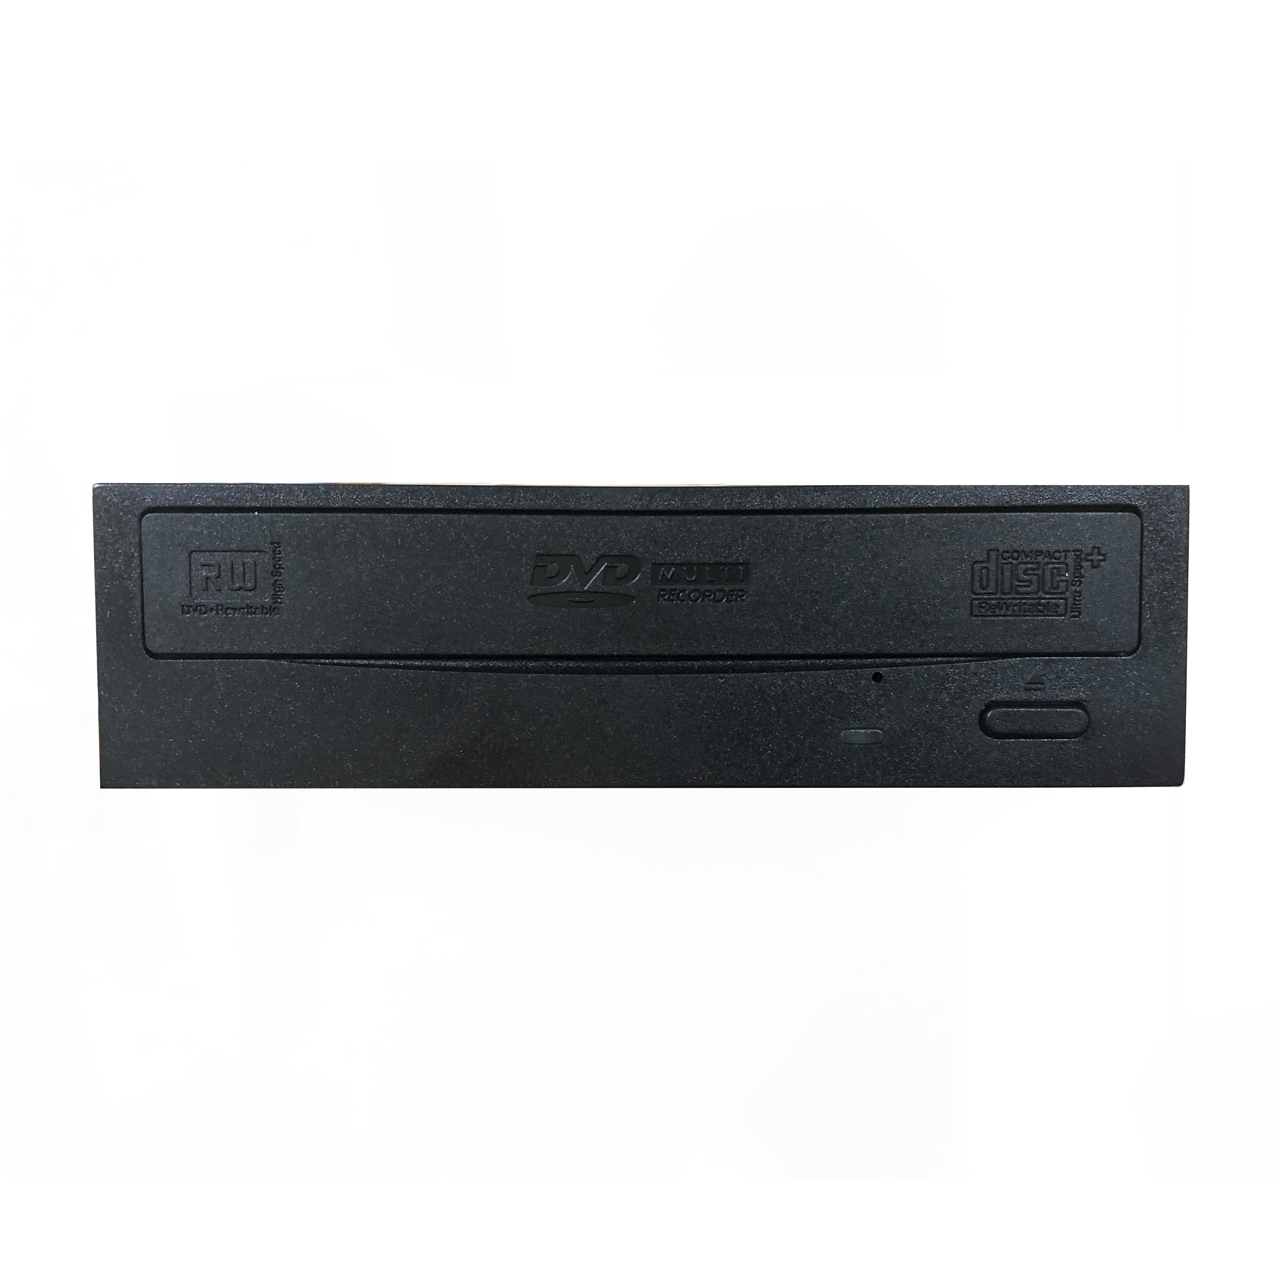 درایو DVD اینترنال سونی مدل AD7280S